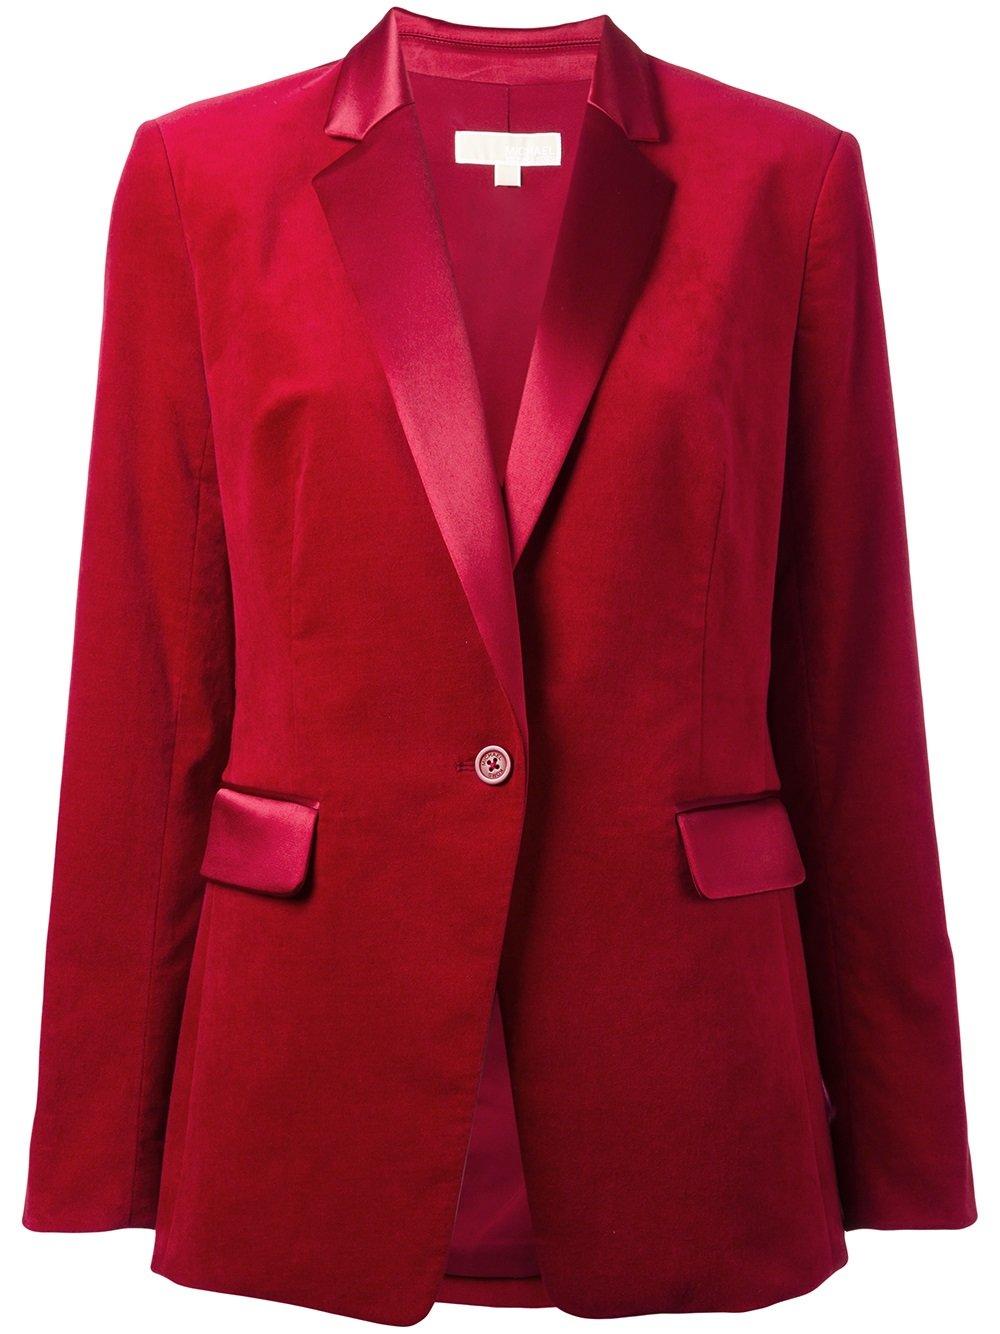 Lyst - Michael Kors Velvet Tuxedo Blazer in Red